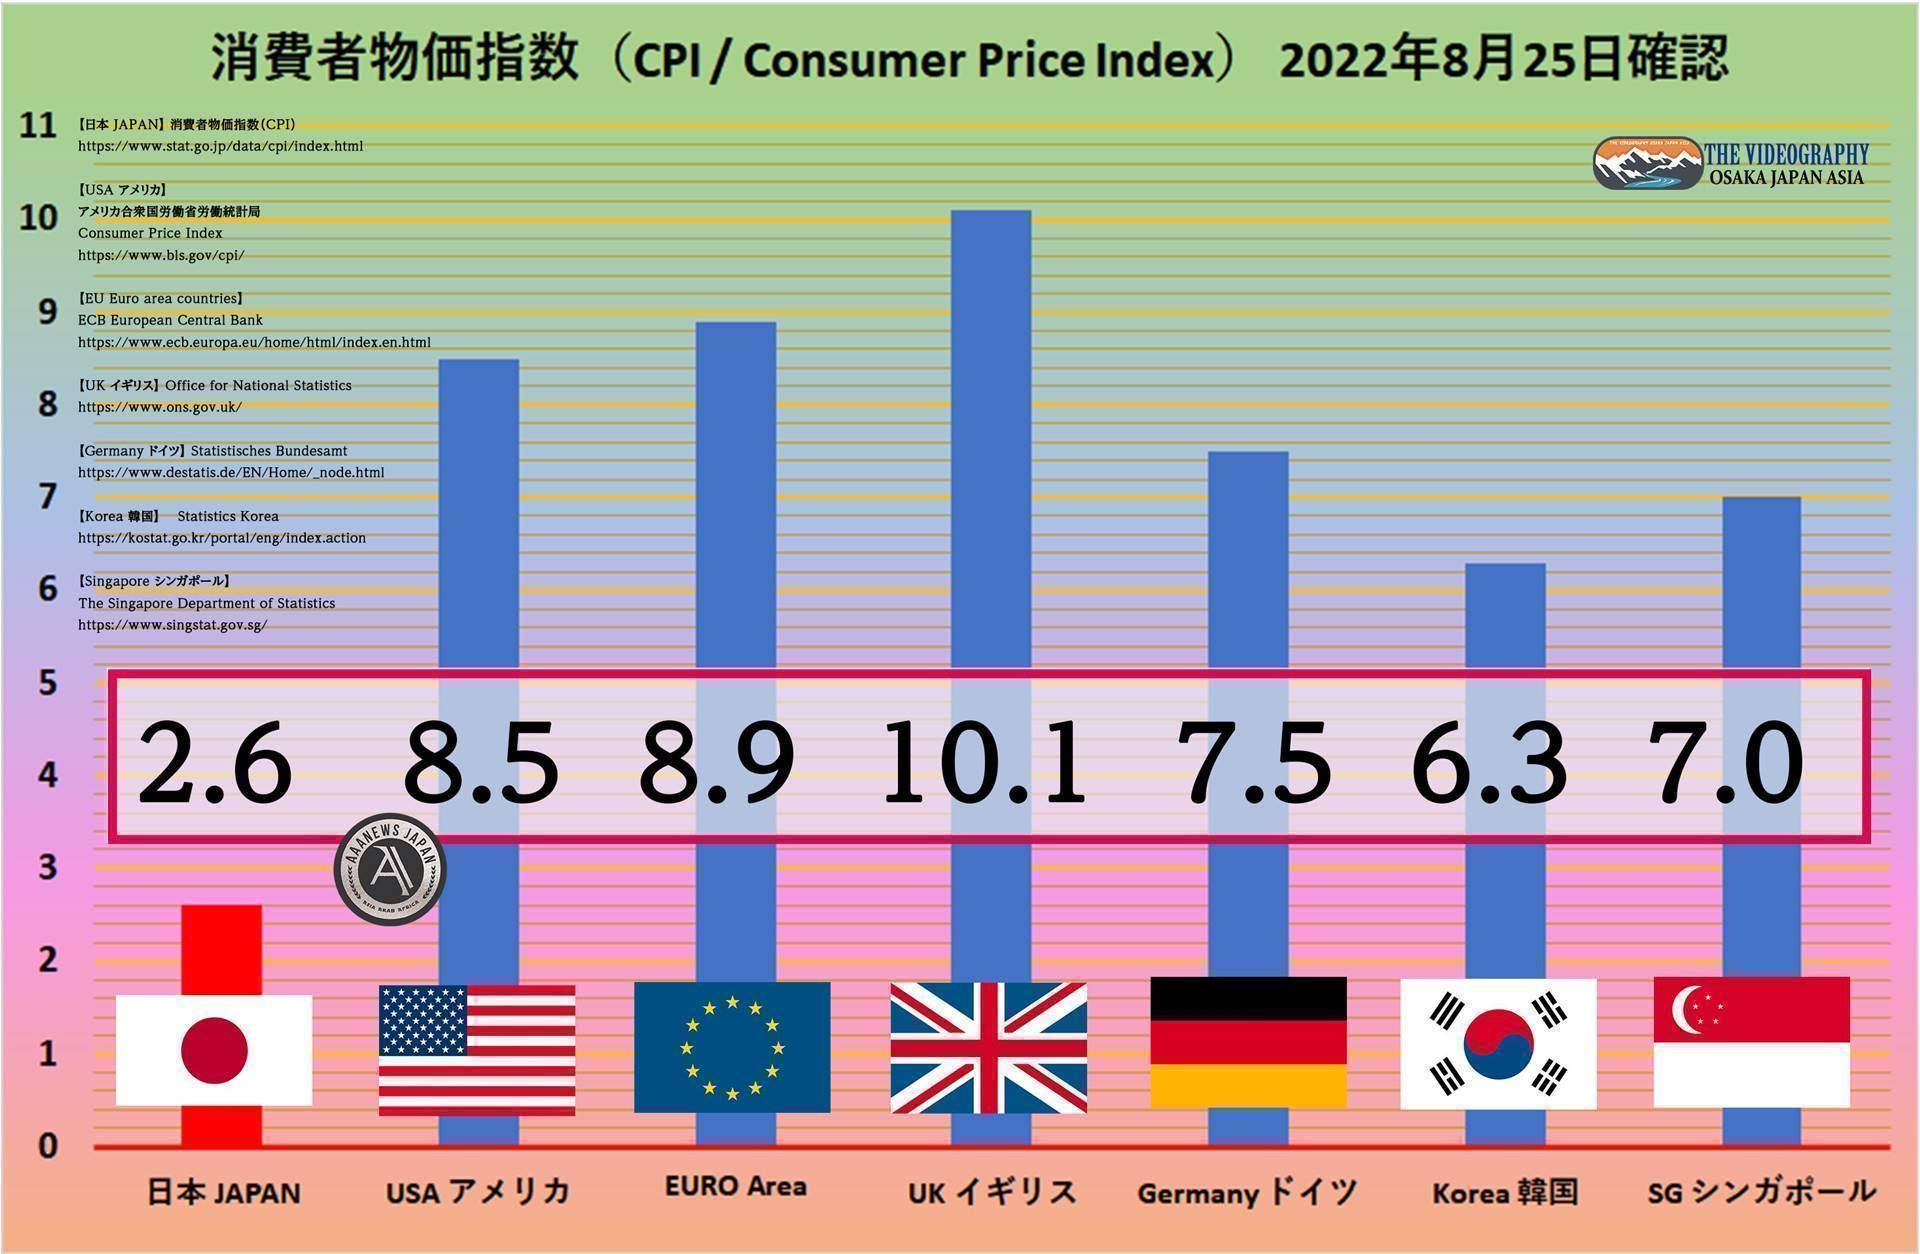 世界の消費者物価指数（CPI / Consumer Price Index） 総合指数・日本 2.6%、アメリカ 8.5%、EURO Area 8.9%、イギリス 10.1%、ドイツ 7.5%、韓国 6.3%、シンガポール 7.0% 